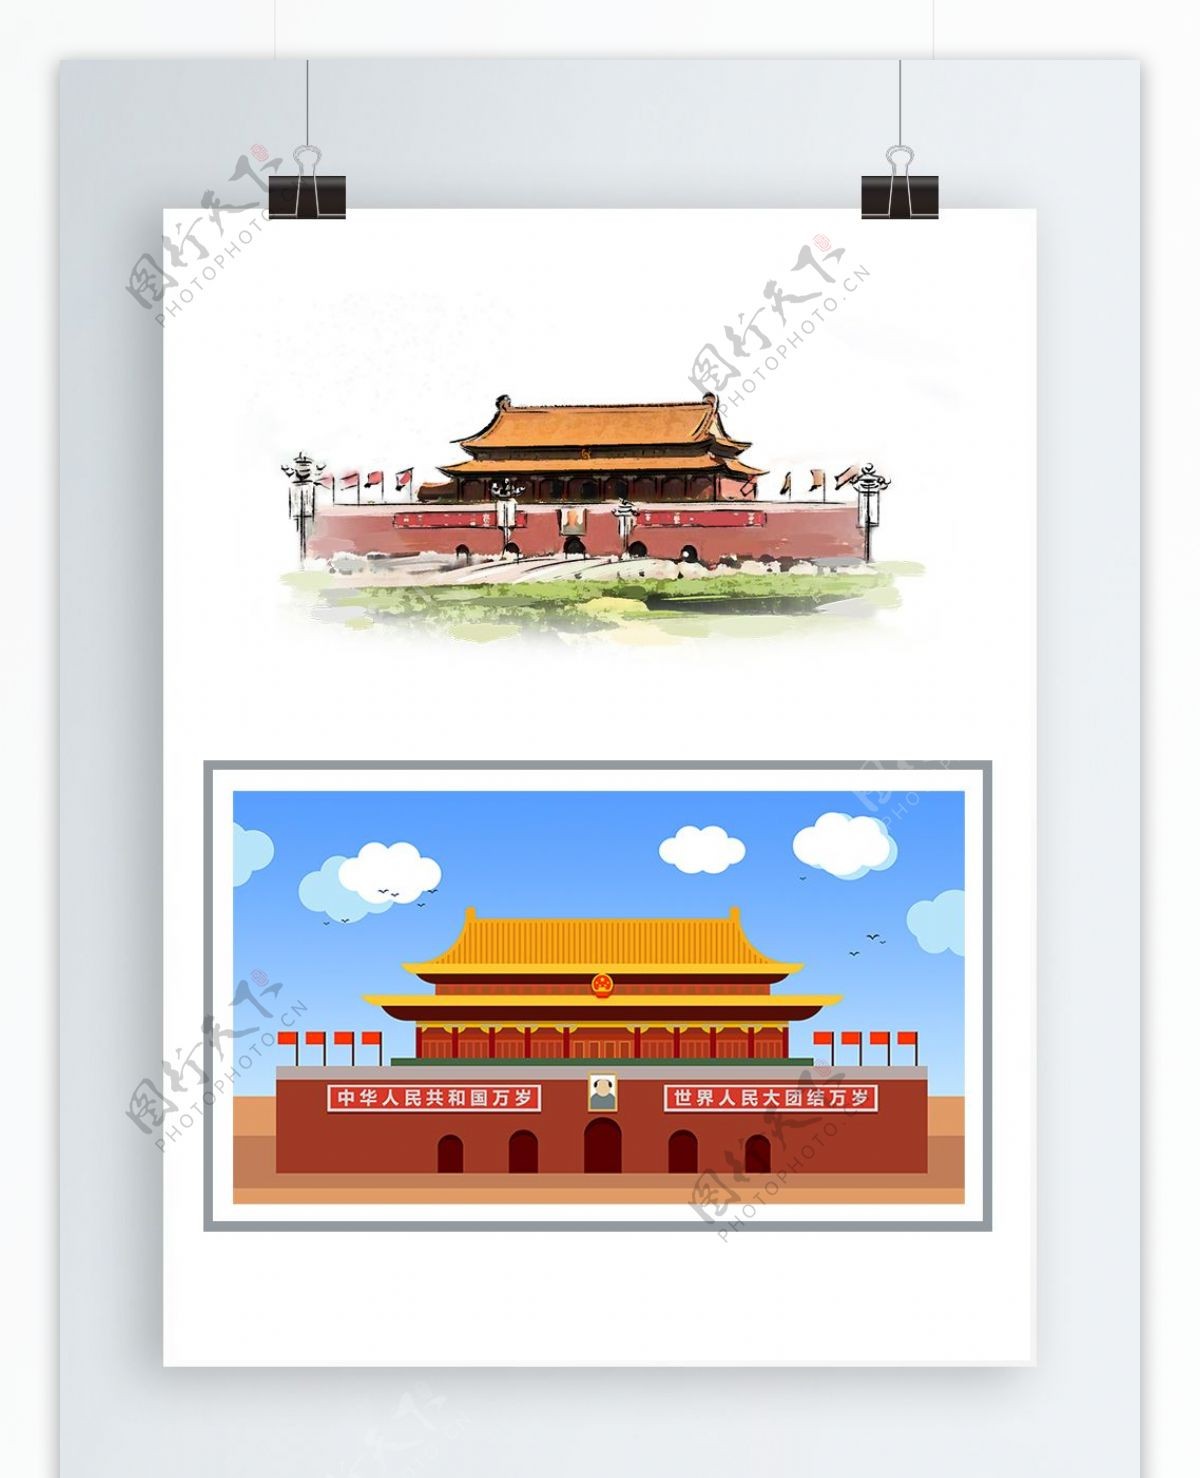 北京天安门城楼建党建军节国庆节插画图元素